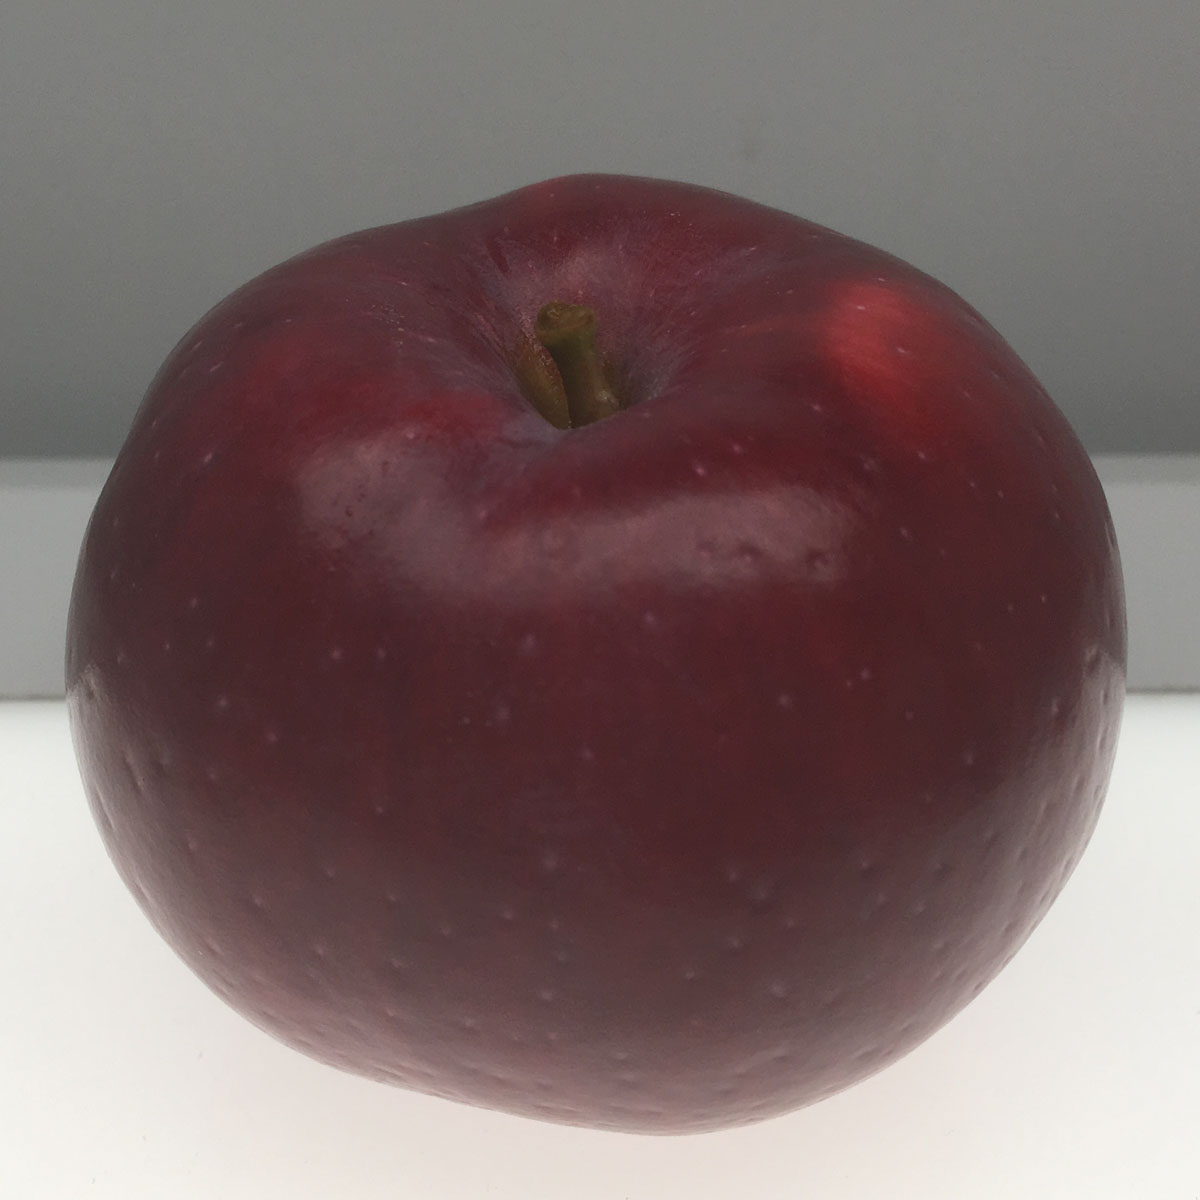 William's Pride apple